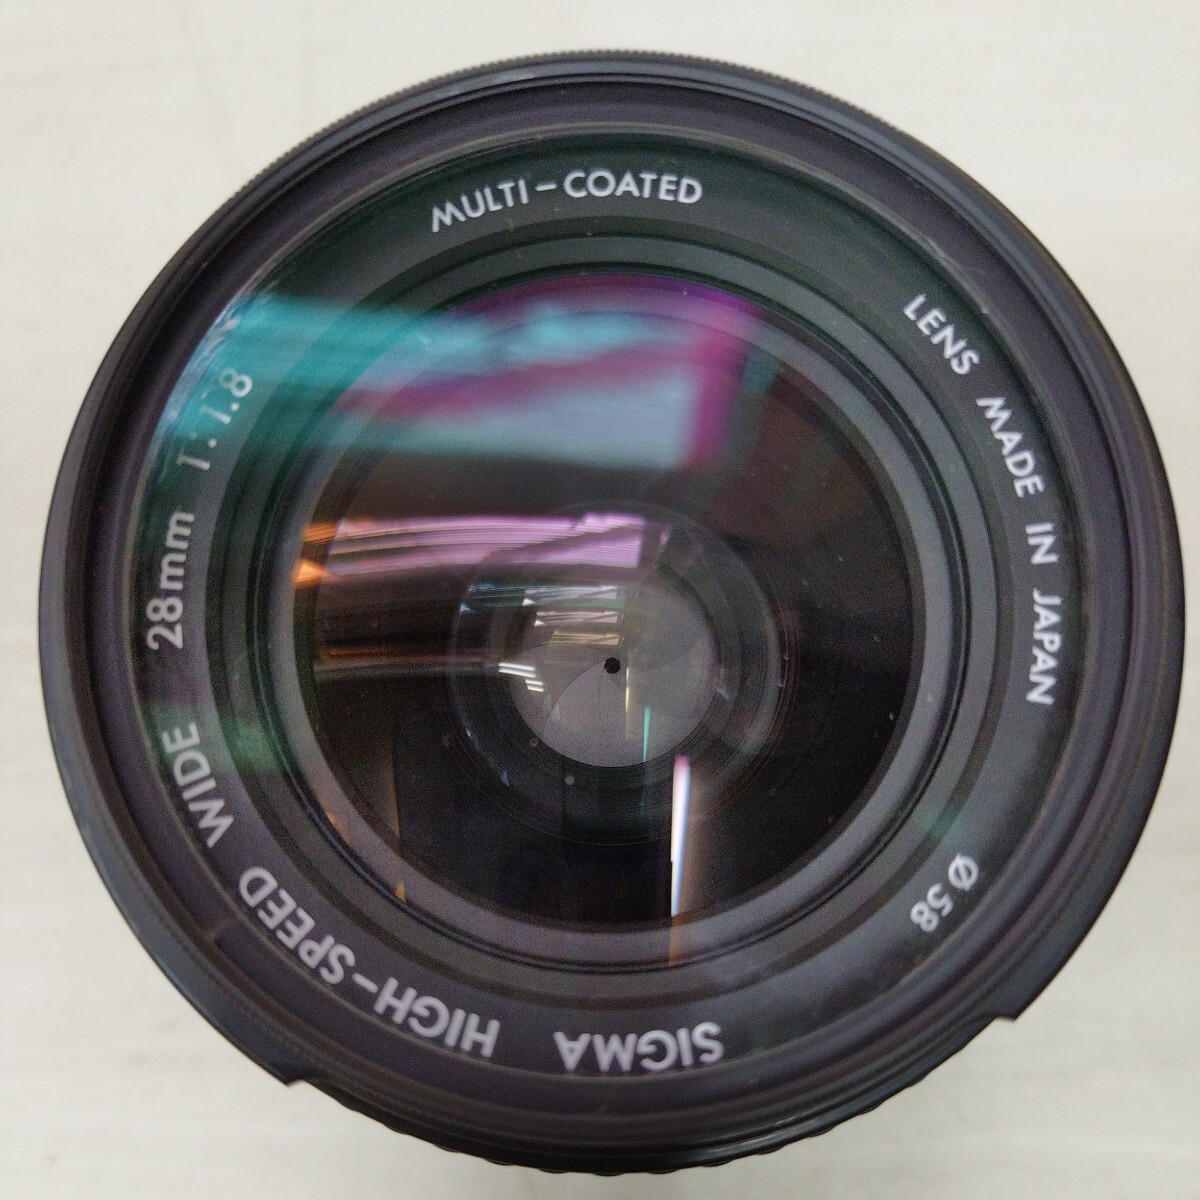 SIGMA HIGH-SPEED WIDE 28mm 1:1.8 MULTI-COATED Φ58 シグマ カメラレンズ ソニー、ミノルタ用 未確認 LENS1706_画像6